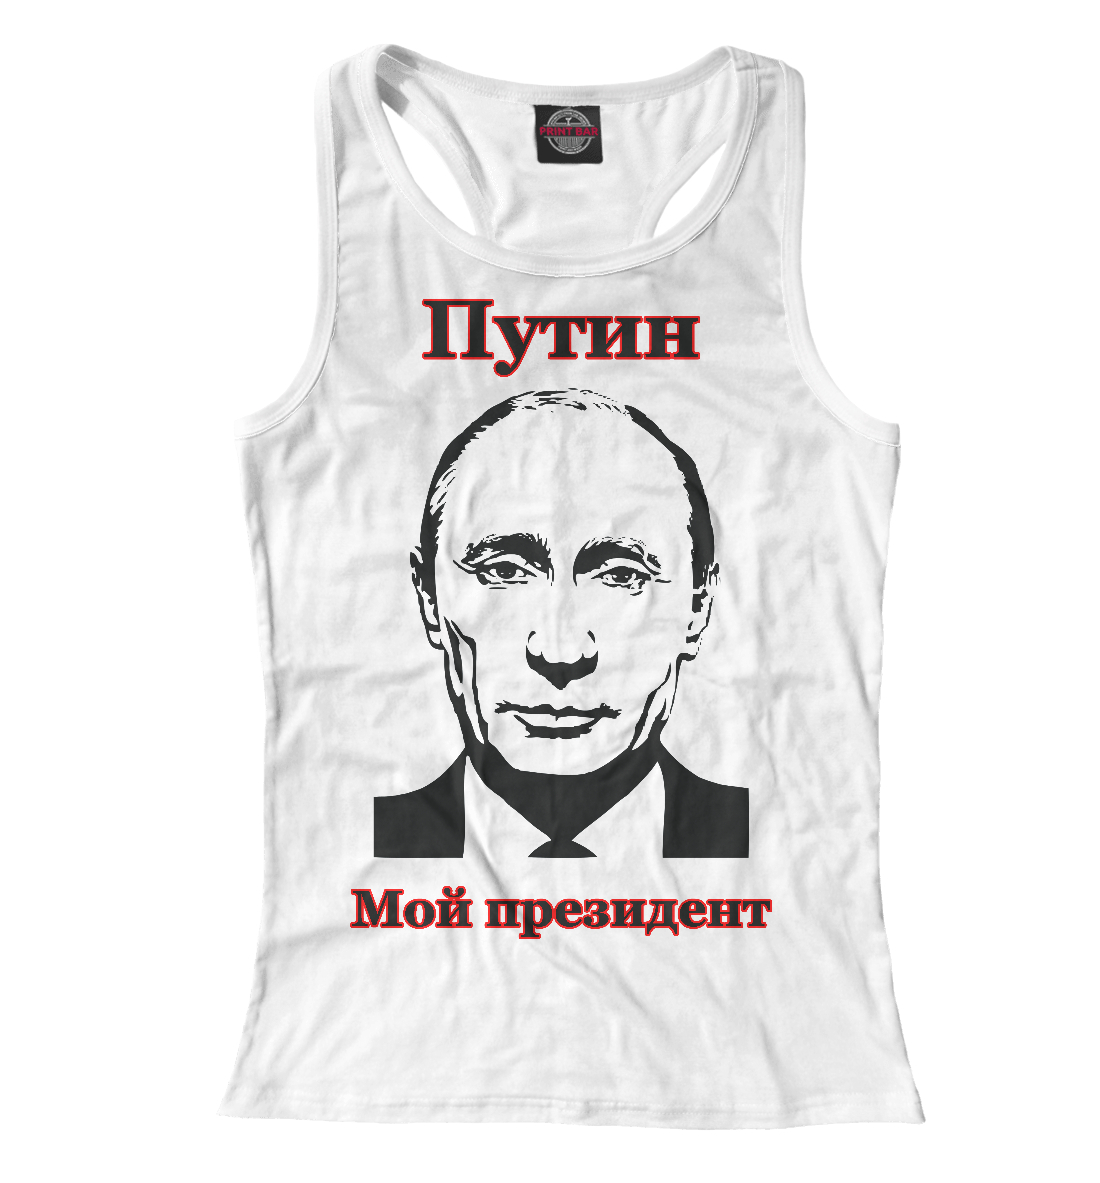 Путин - мой президент